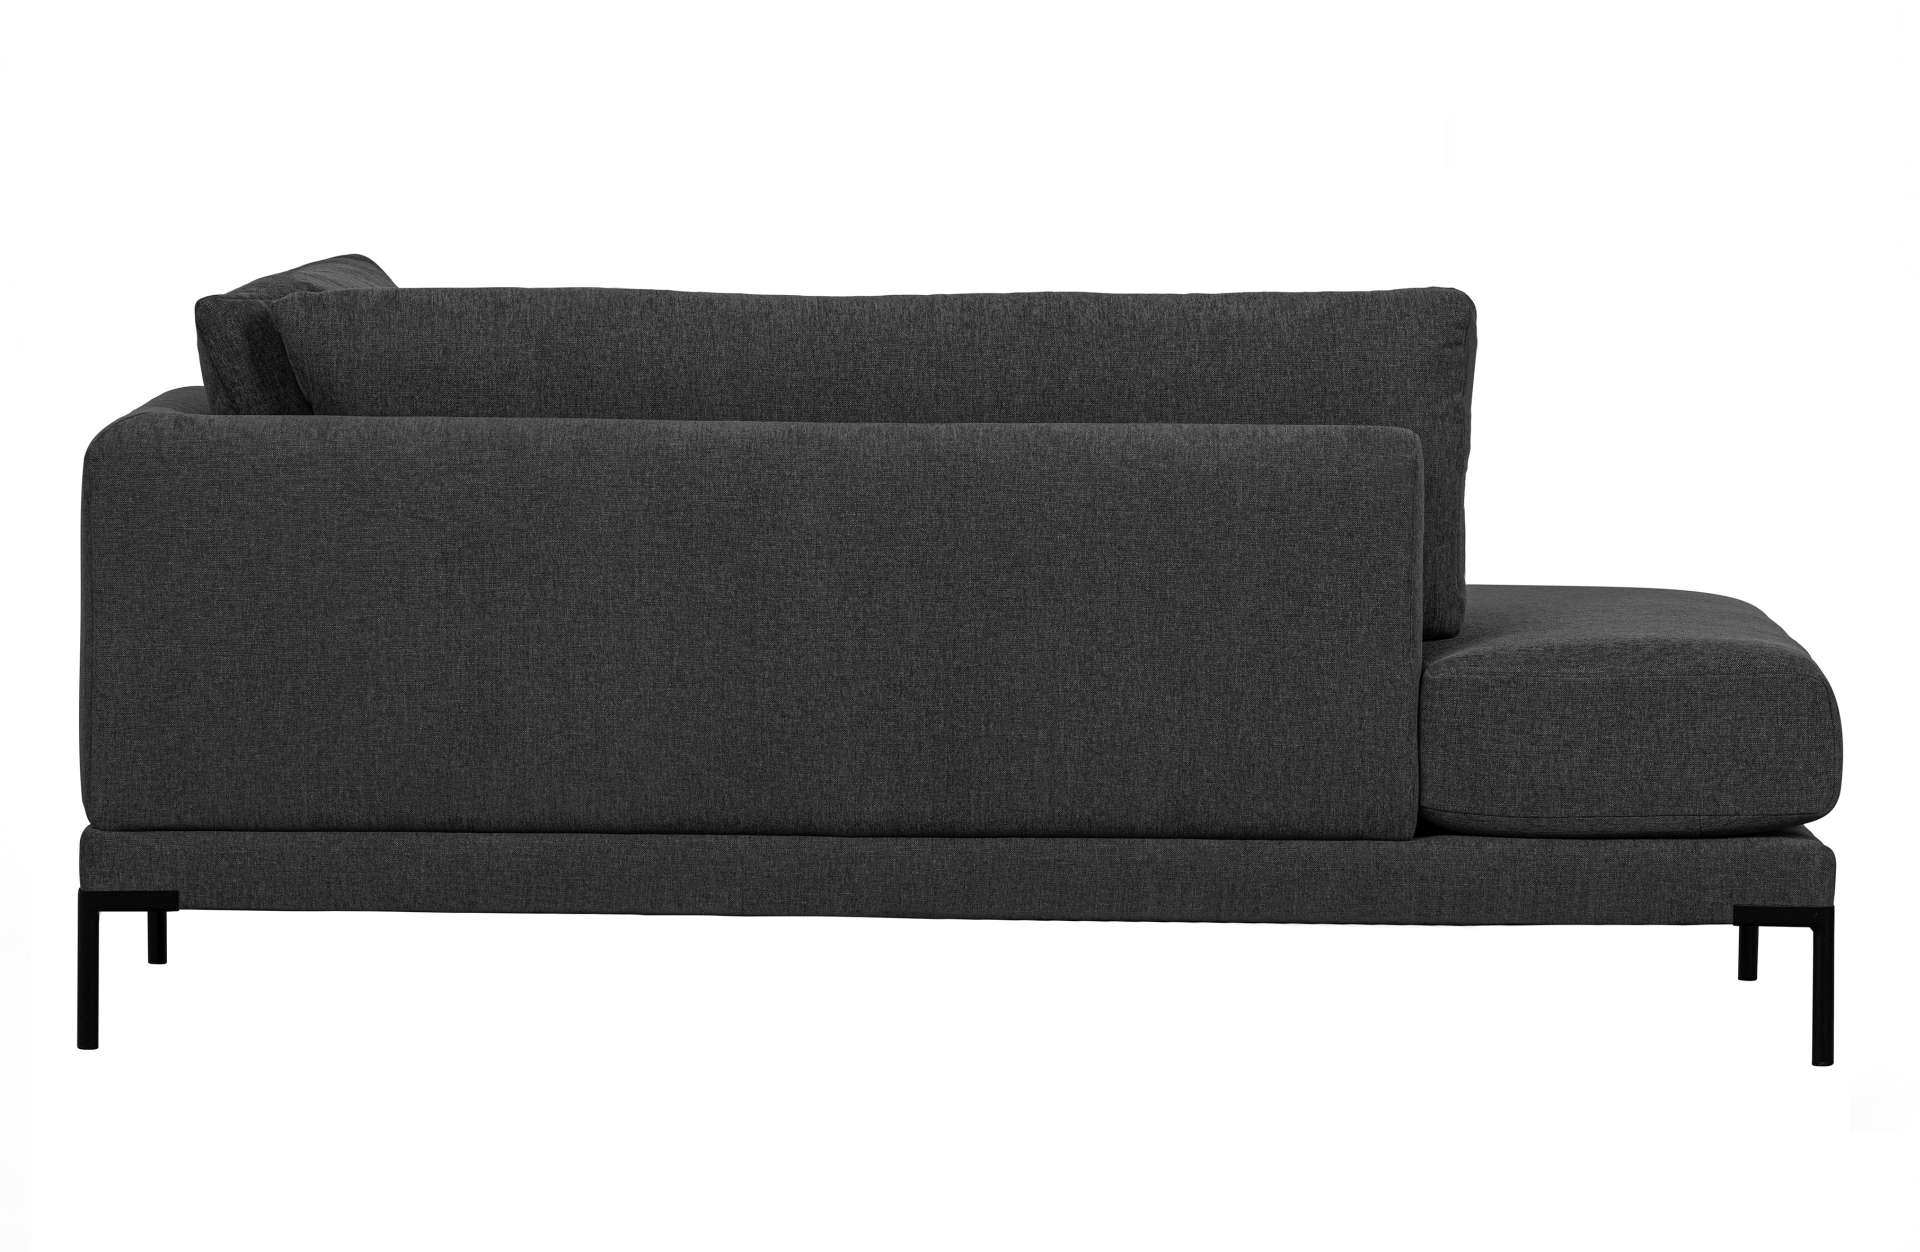 Das Modulsofa Couple Lounge überzeugt mit seinem modernen Design. Das Lounge Element mit der Ausführung Links wurde aus Melange Stoff gefertigt, welcher einen einen dunkelgrauen Farbton besitzen. Das Gestell ist aus Metall und hat eine schwarze Farbe. Das